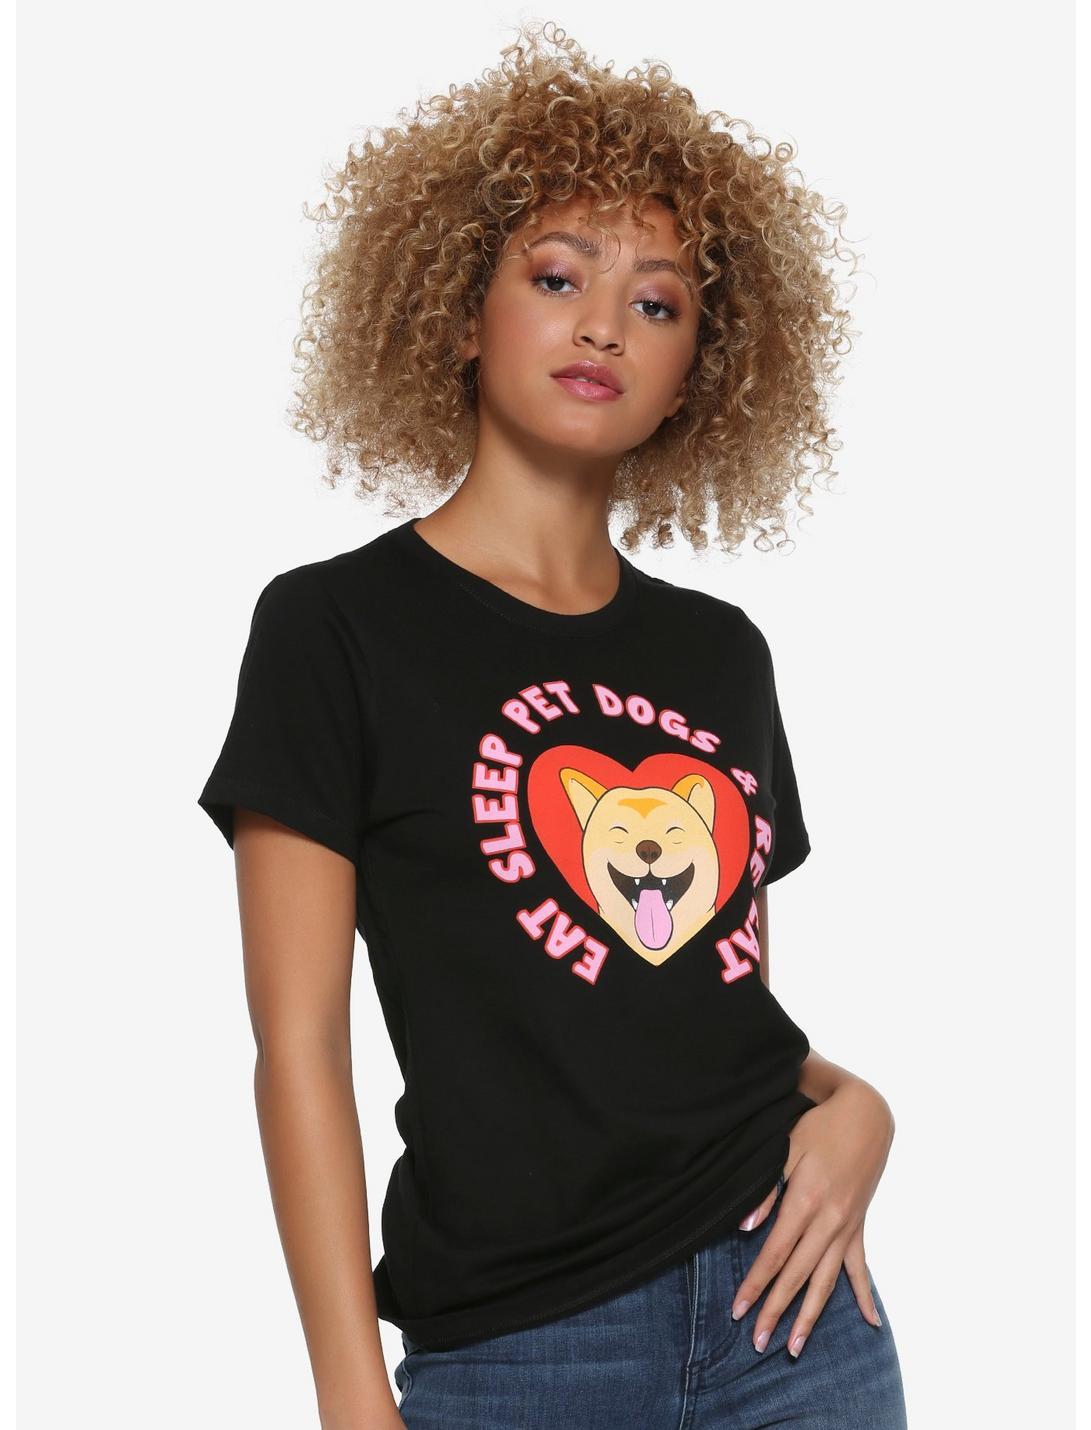 Eat, Sleep & Pet Dogs Girls T-Shirt, WHITE, hi-res